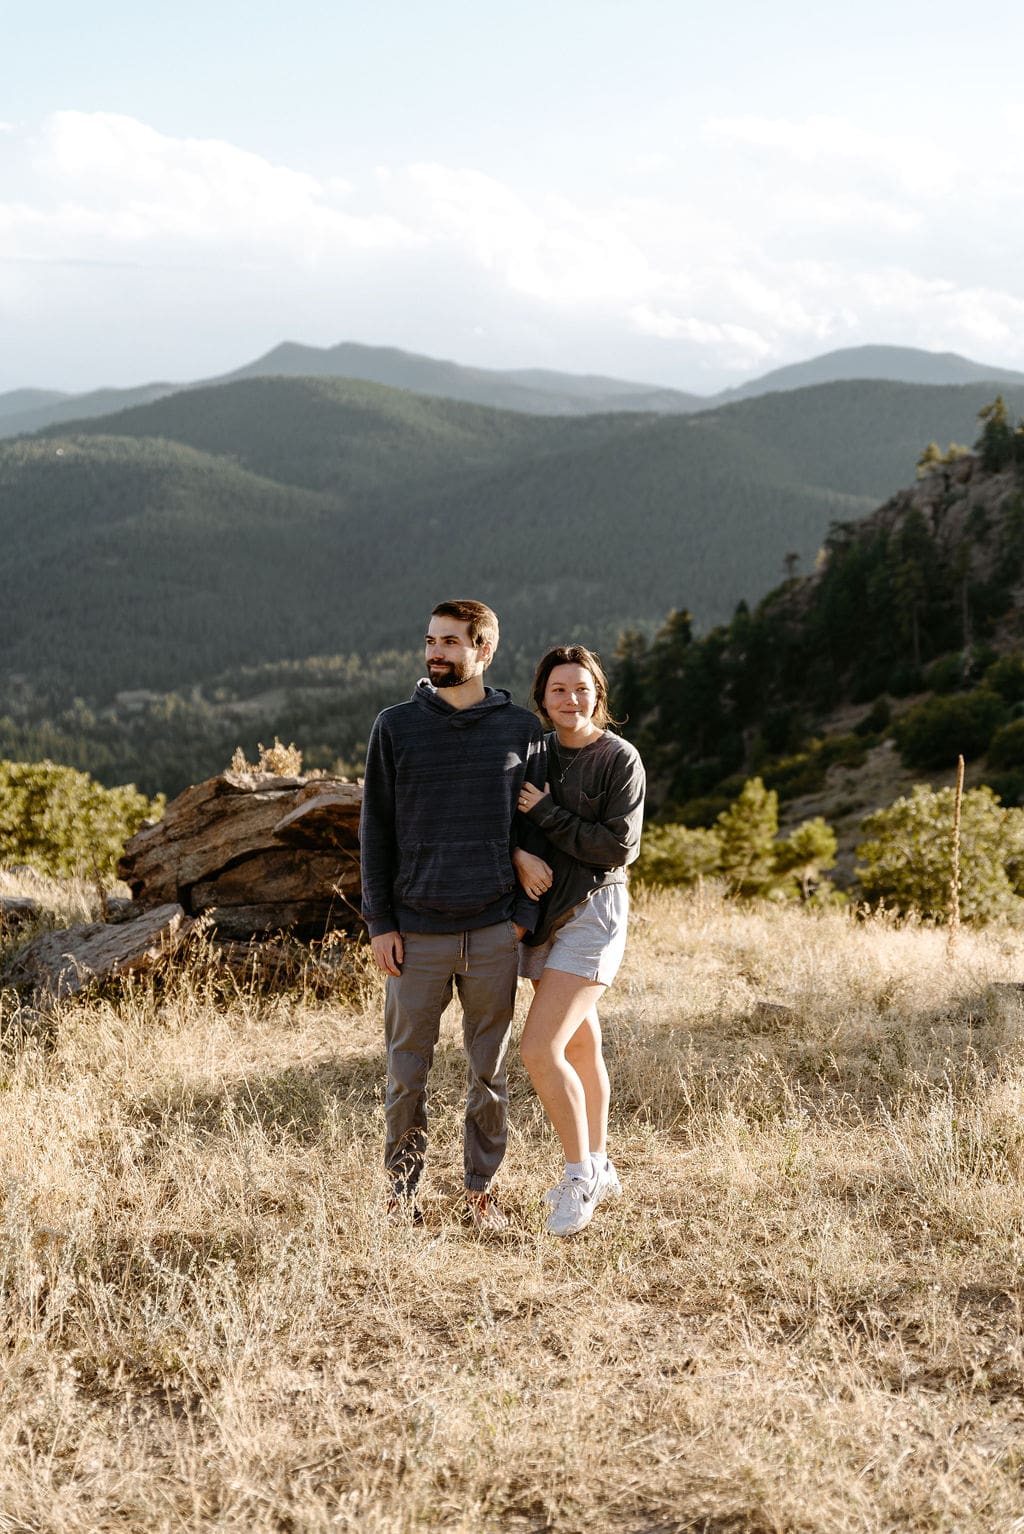 Denver Colorado Proposal in the mountains